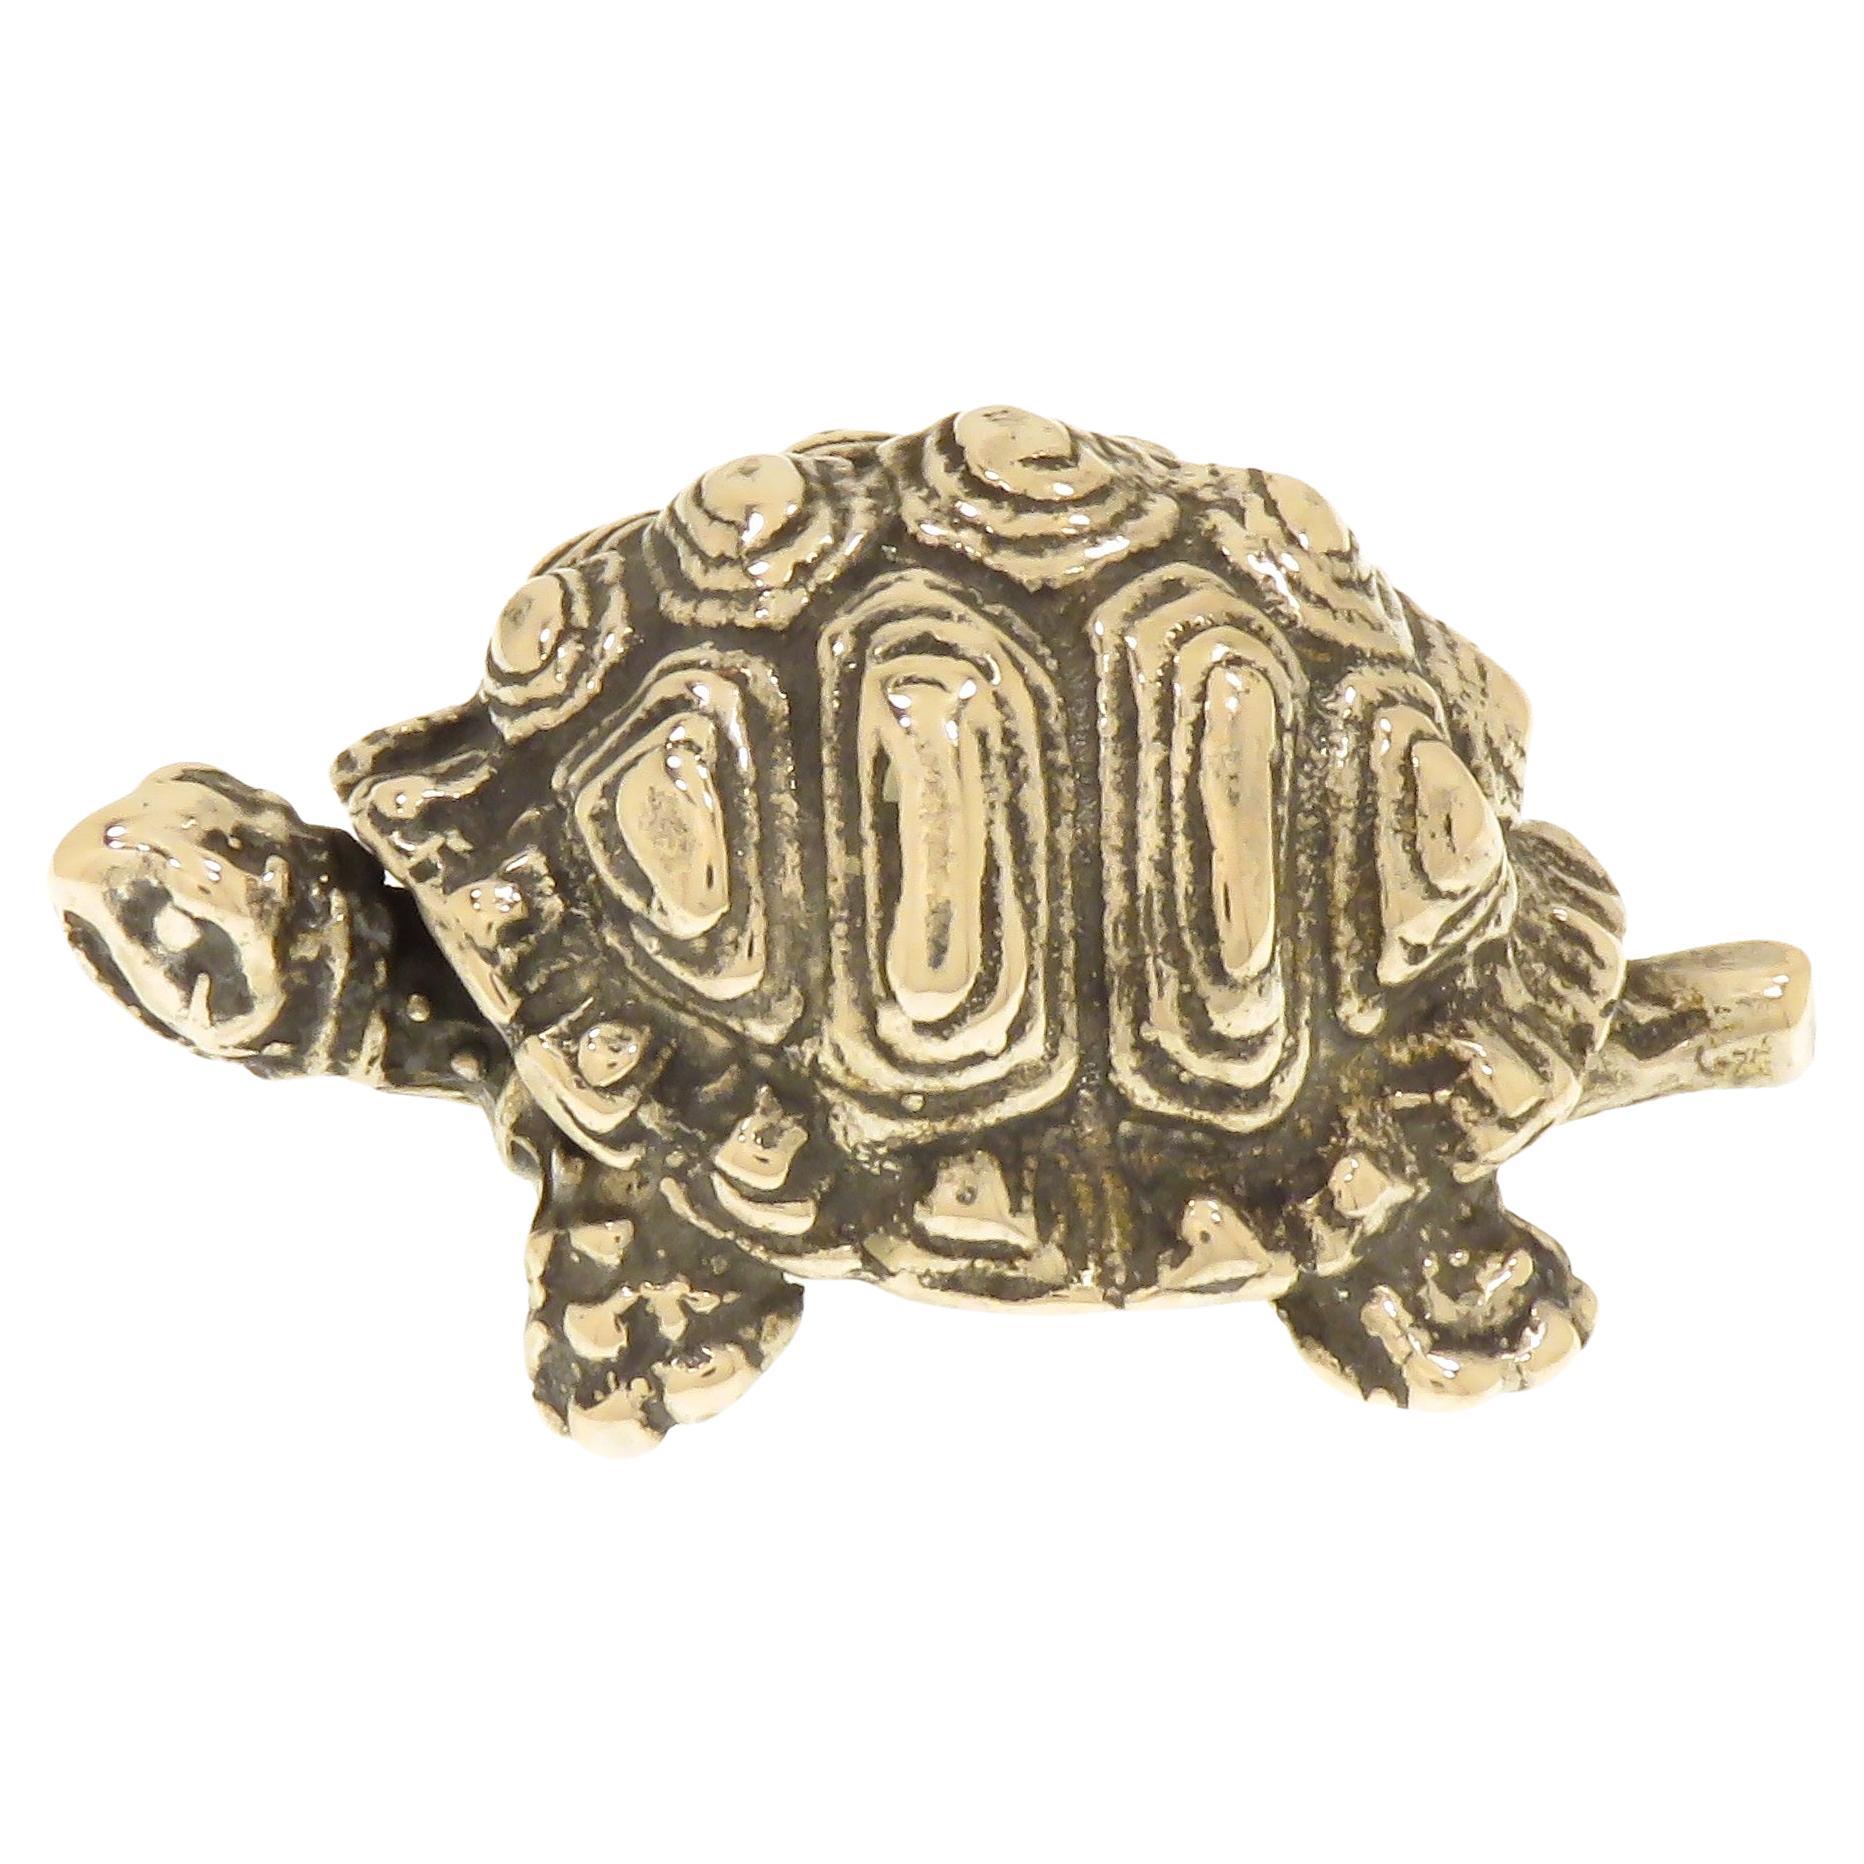 Massivsilberne Schildkrötenfigur, Vintage, 1970er Jahre, hergestellt in Italien